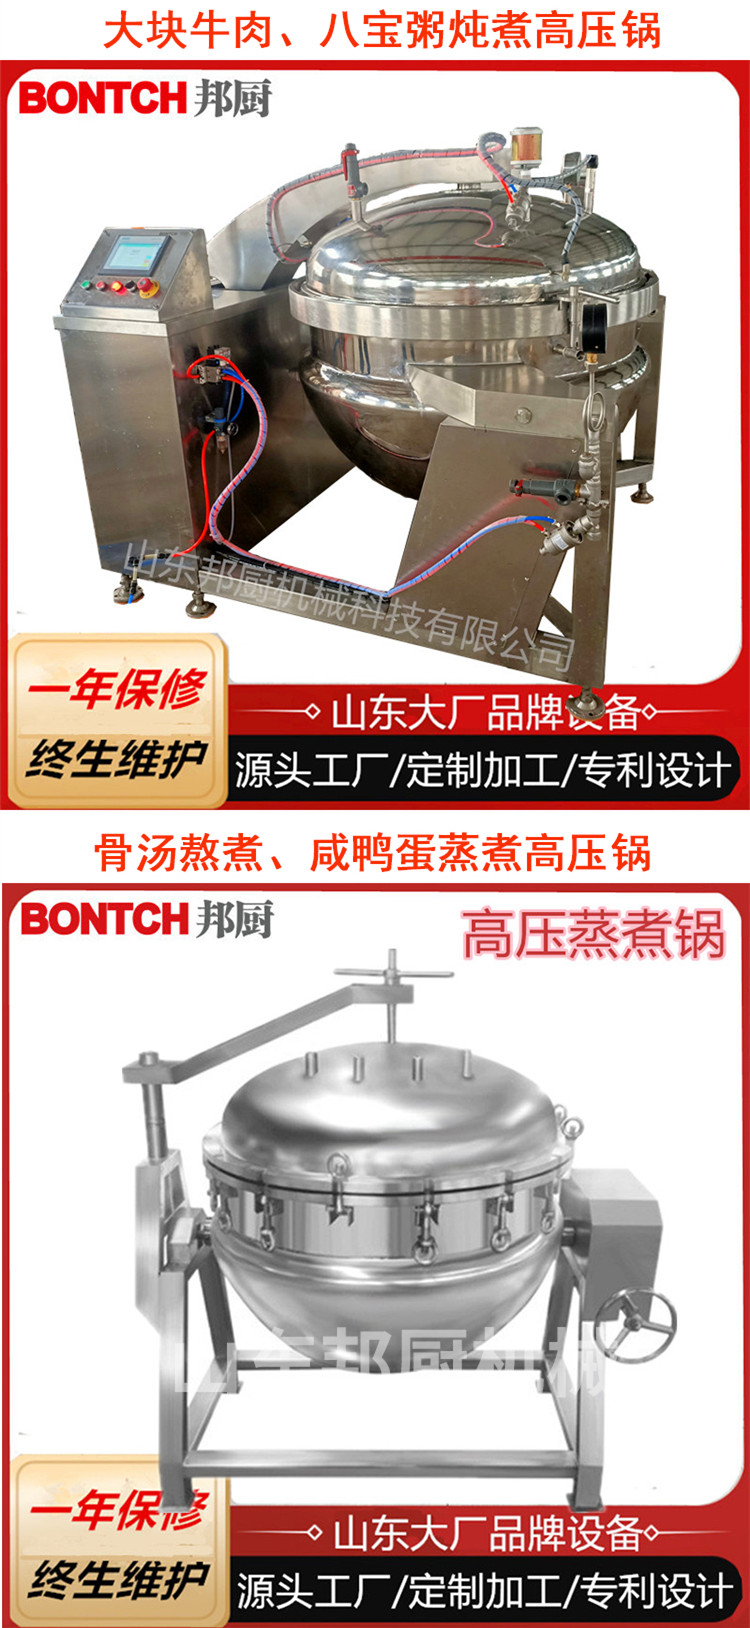 煮纳豆高压煮锅 玉米花生压力煮锅 实验室用小型高压蒸煮锅 3